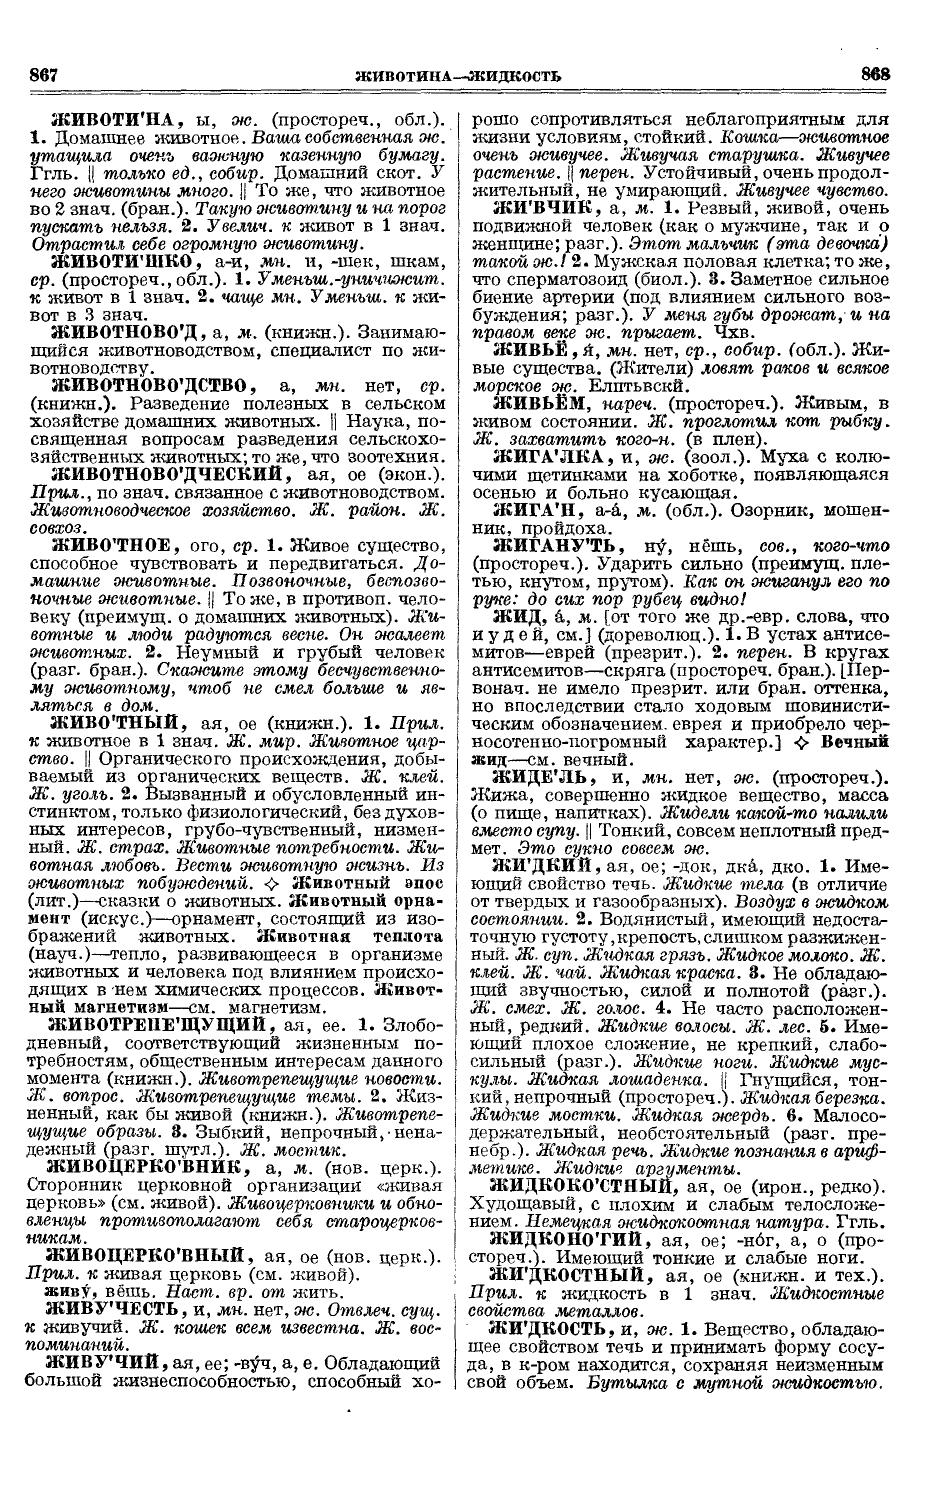 Фотокопия pdf / скан страницы 472 толкового словаря Ушакова (том 1)